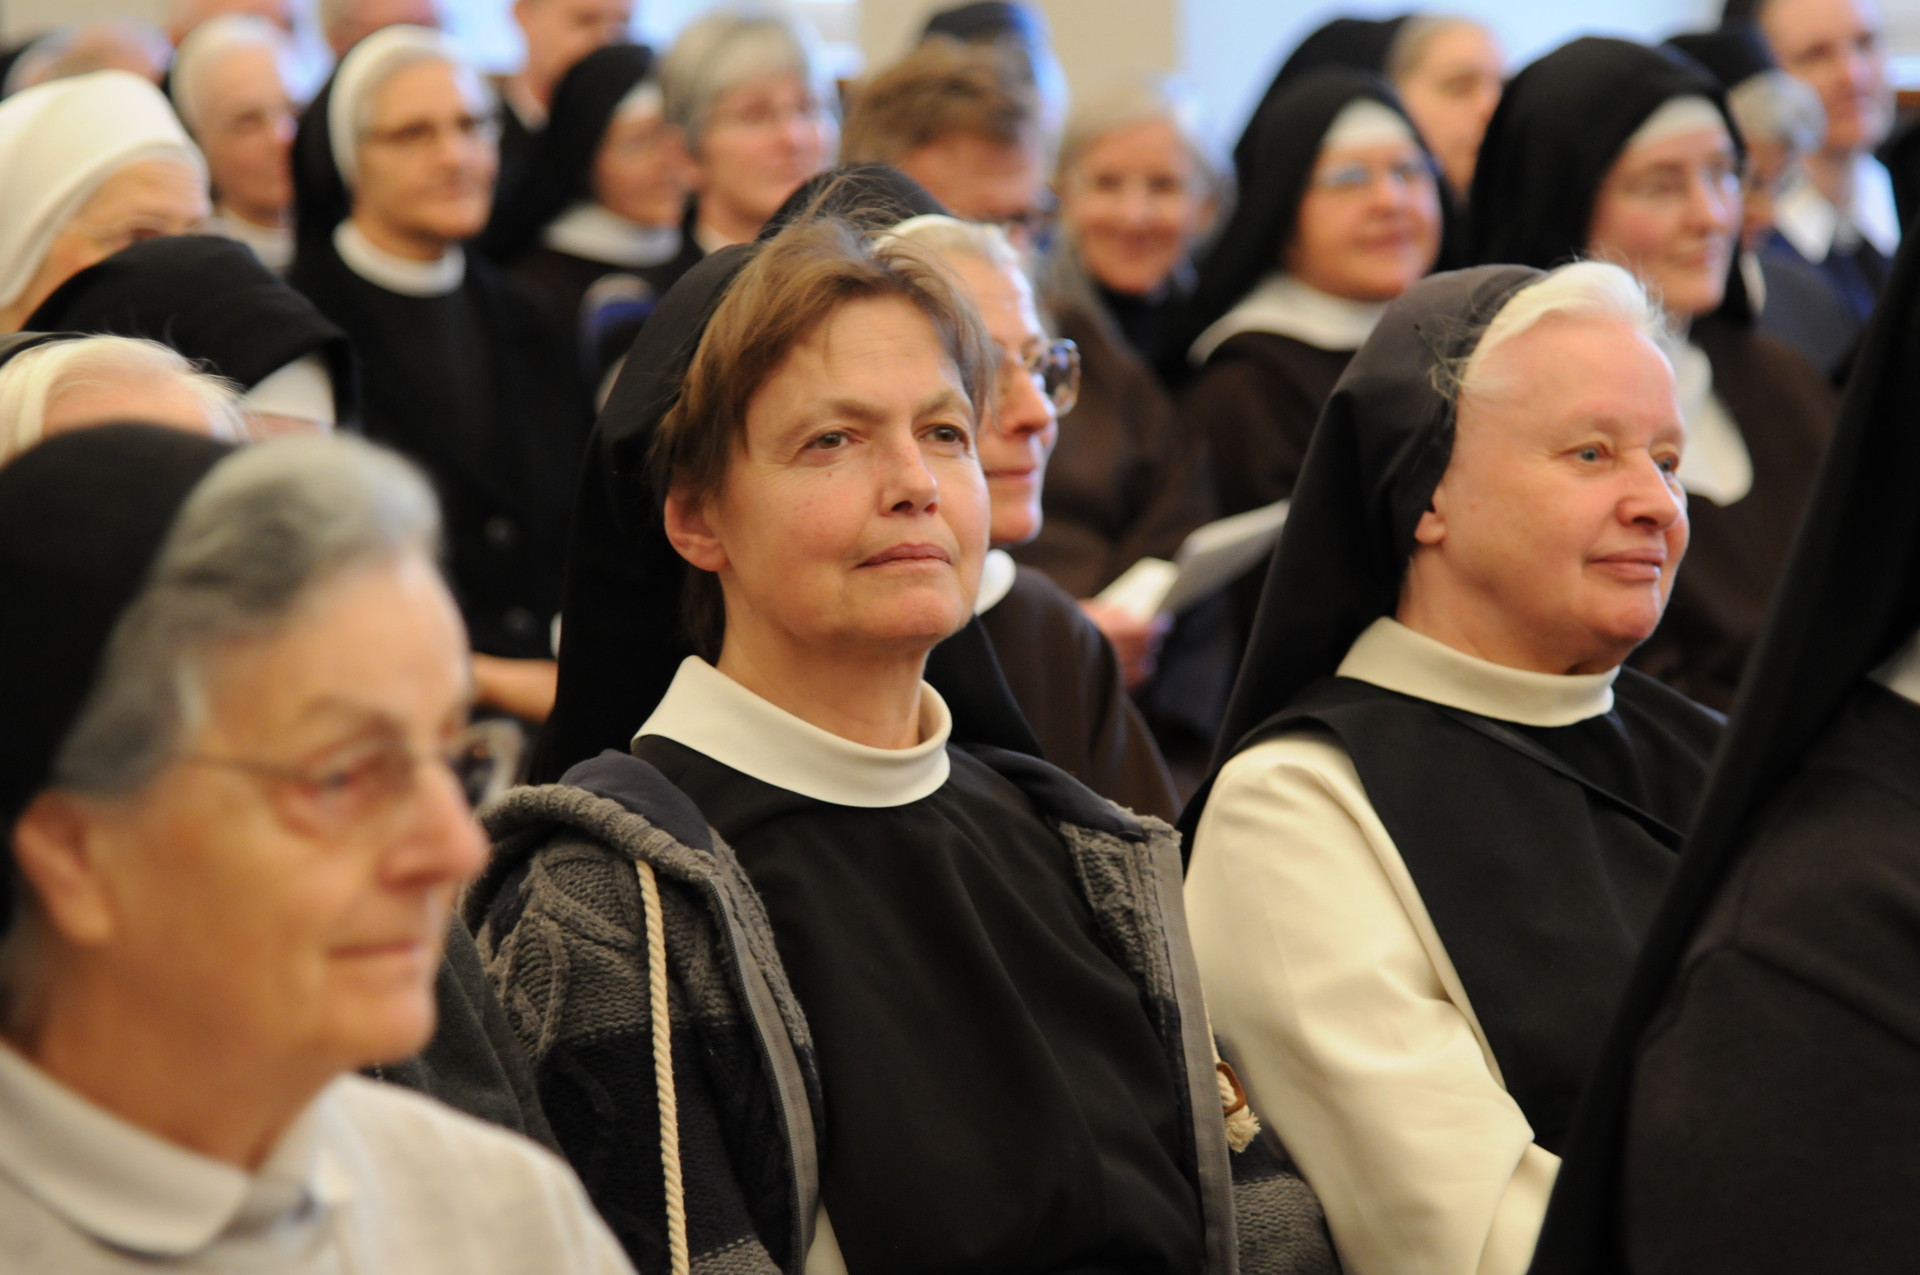 Ordensfrauen in St. Gallen